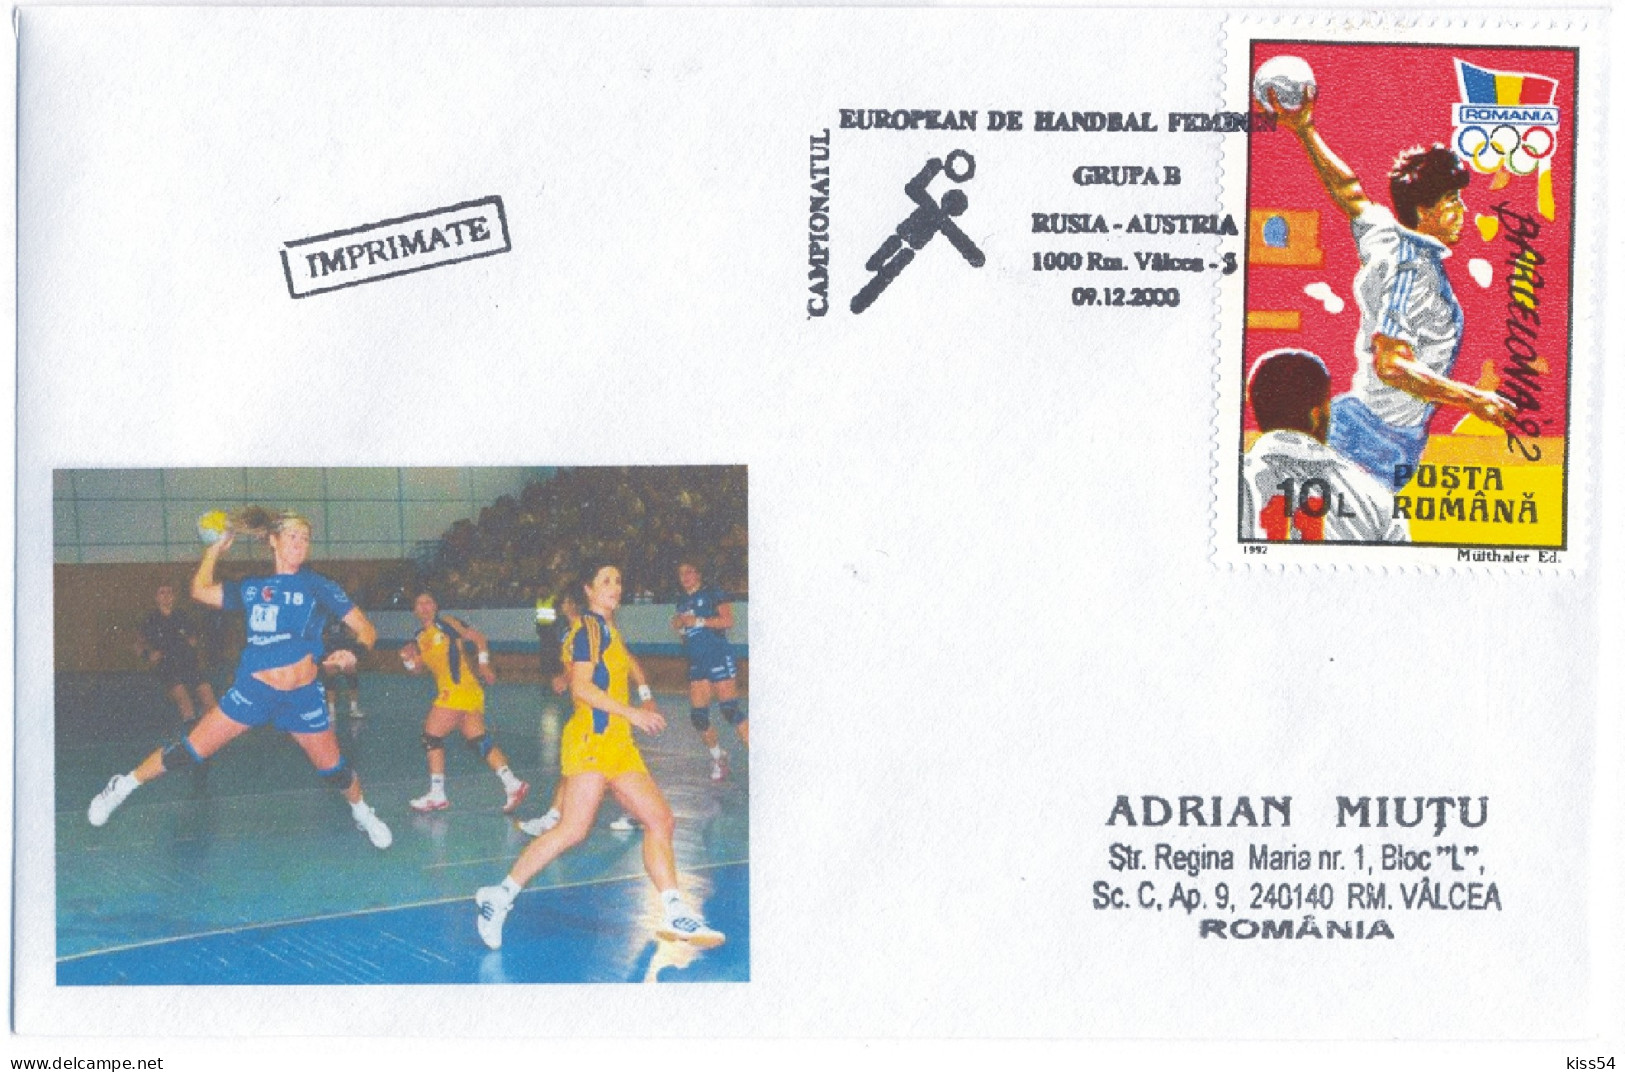 H 2 - 795 Russia - Austria, Handball - WORLD CHAMPIONSHIP 2004 - Cover - 2004 - Balonmano